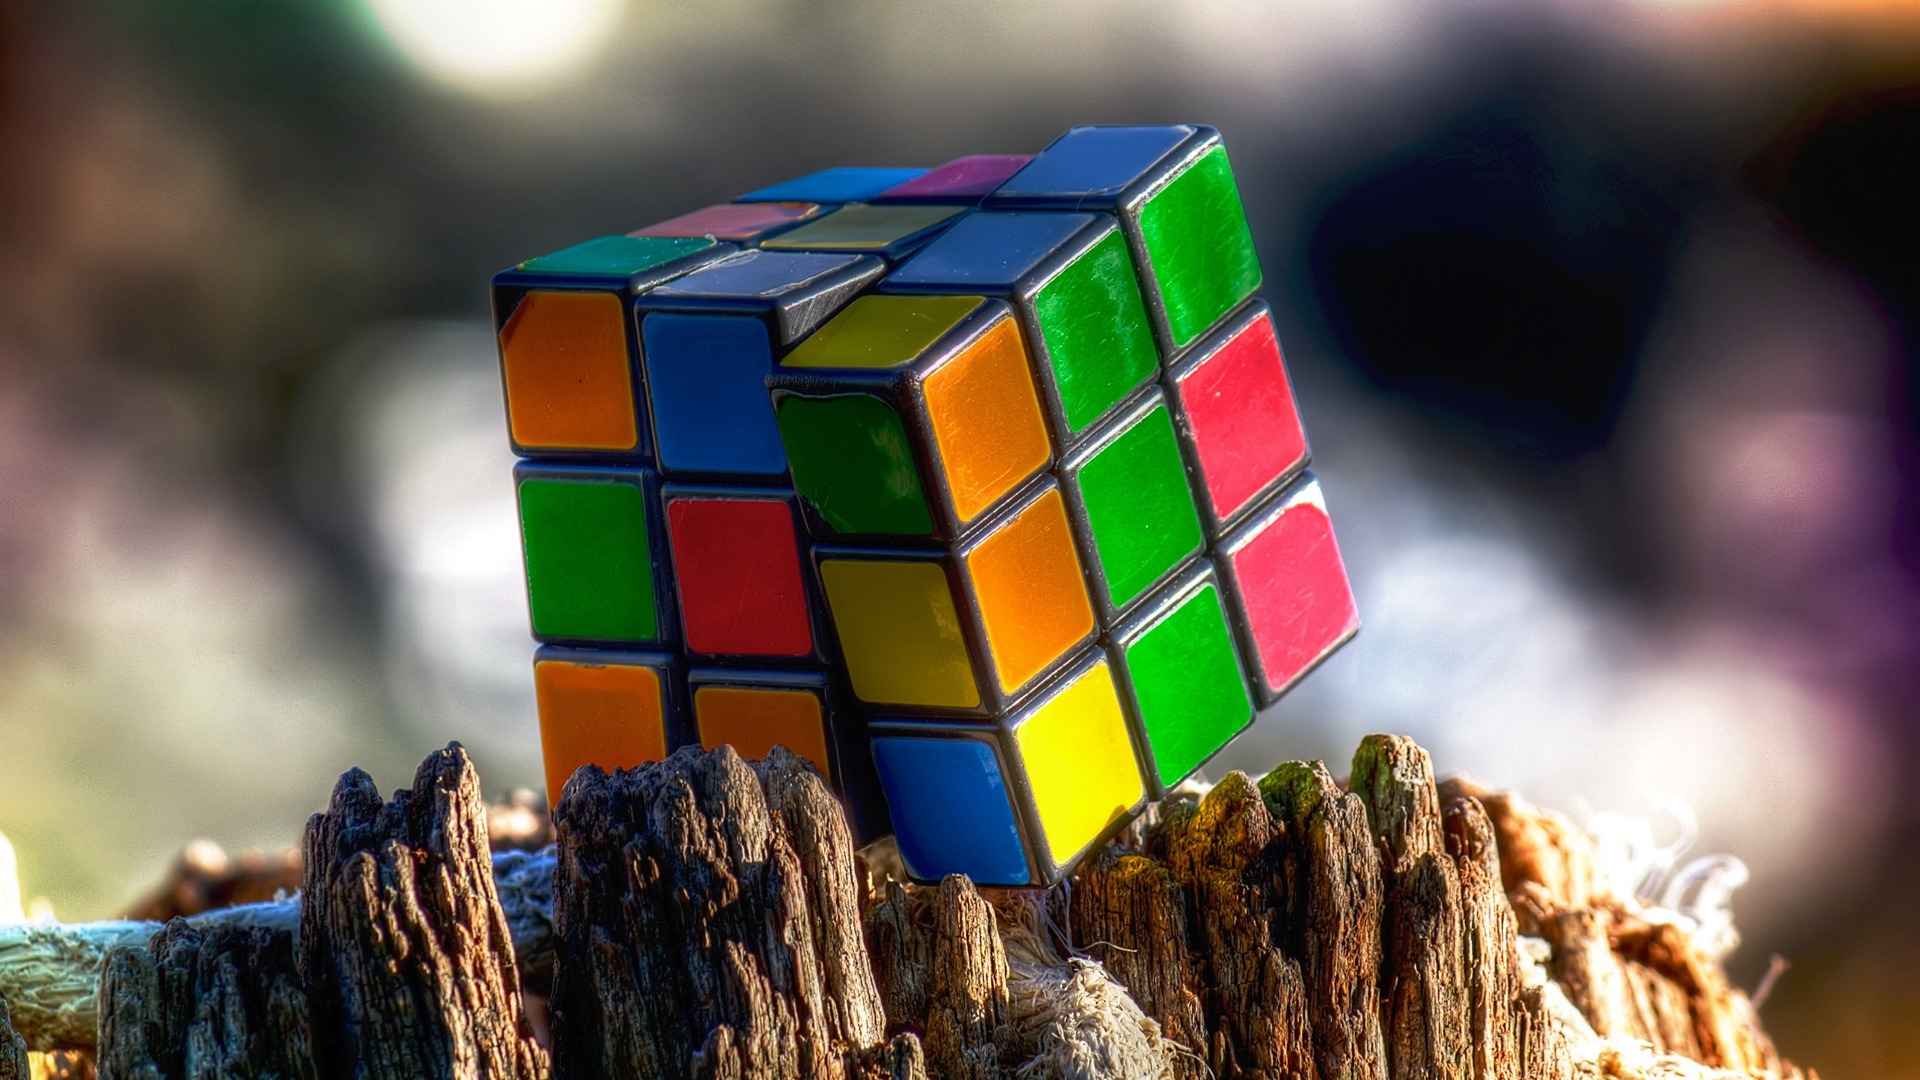 Rubiks Cube for 1920 x 1080 HDTV 1080p resolution